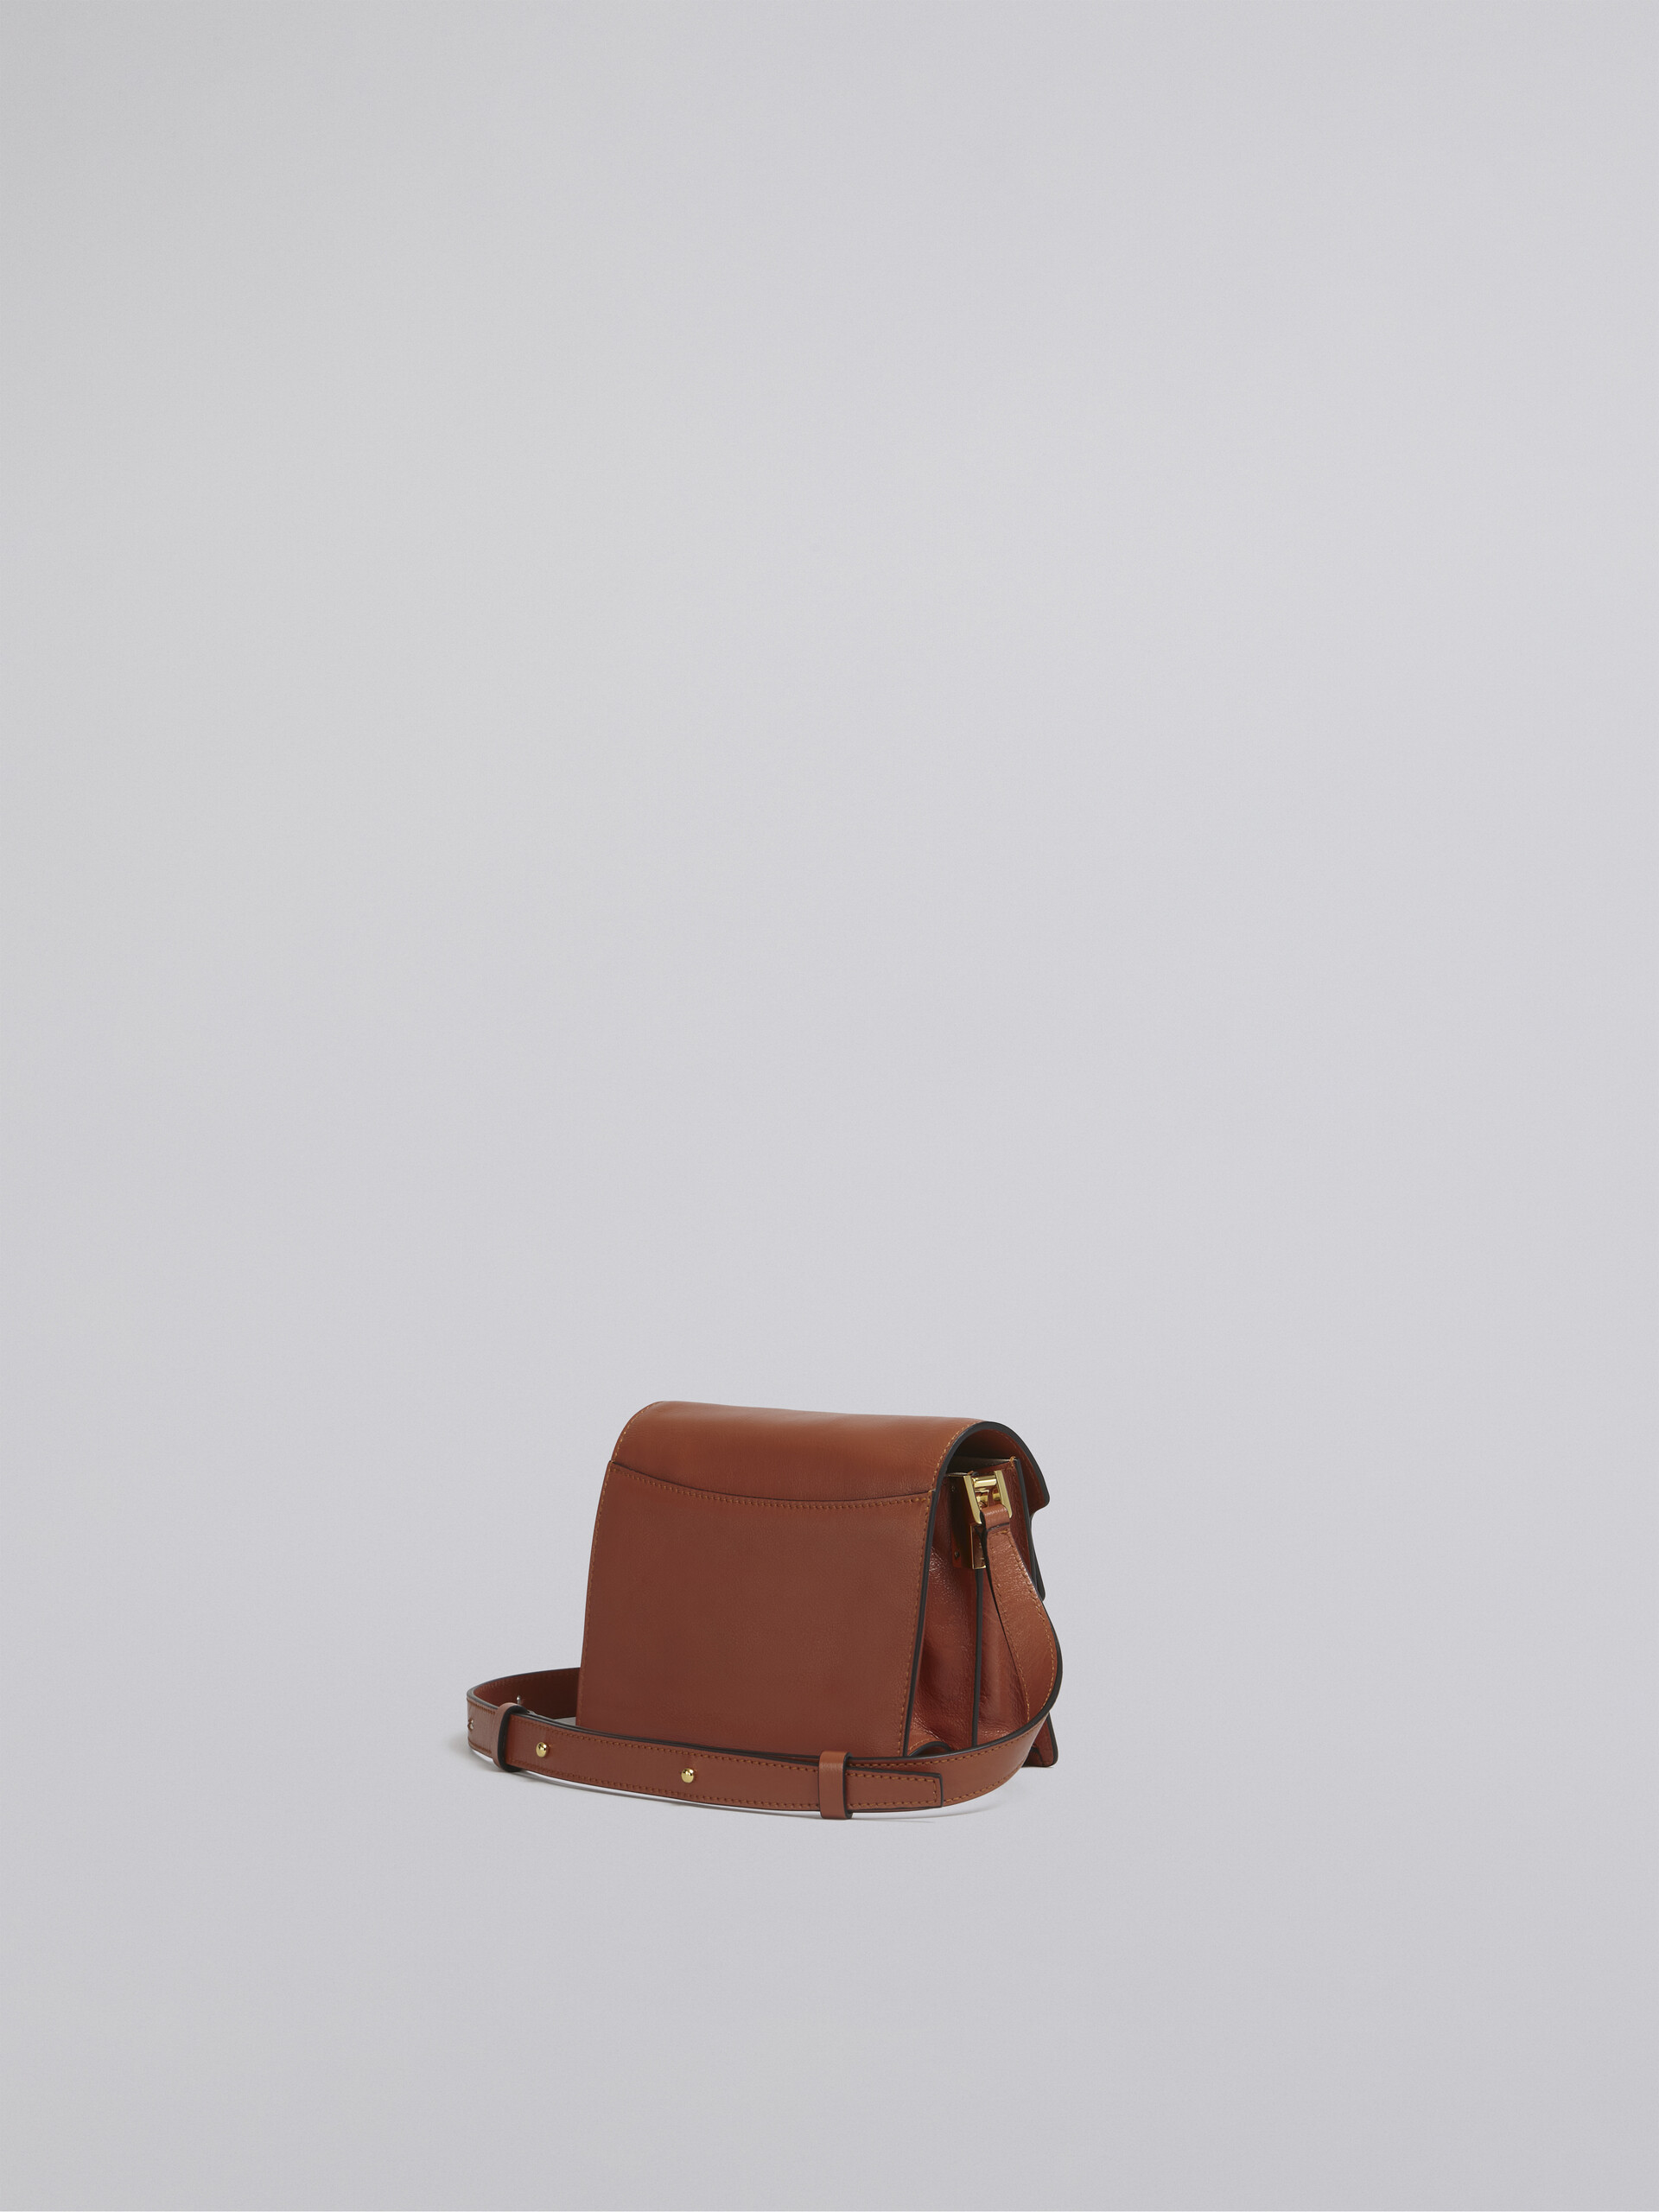 TRUNK SOFT bag mini in pelle marrone - Borse a spalla - Image 3